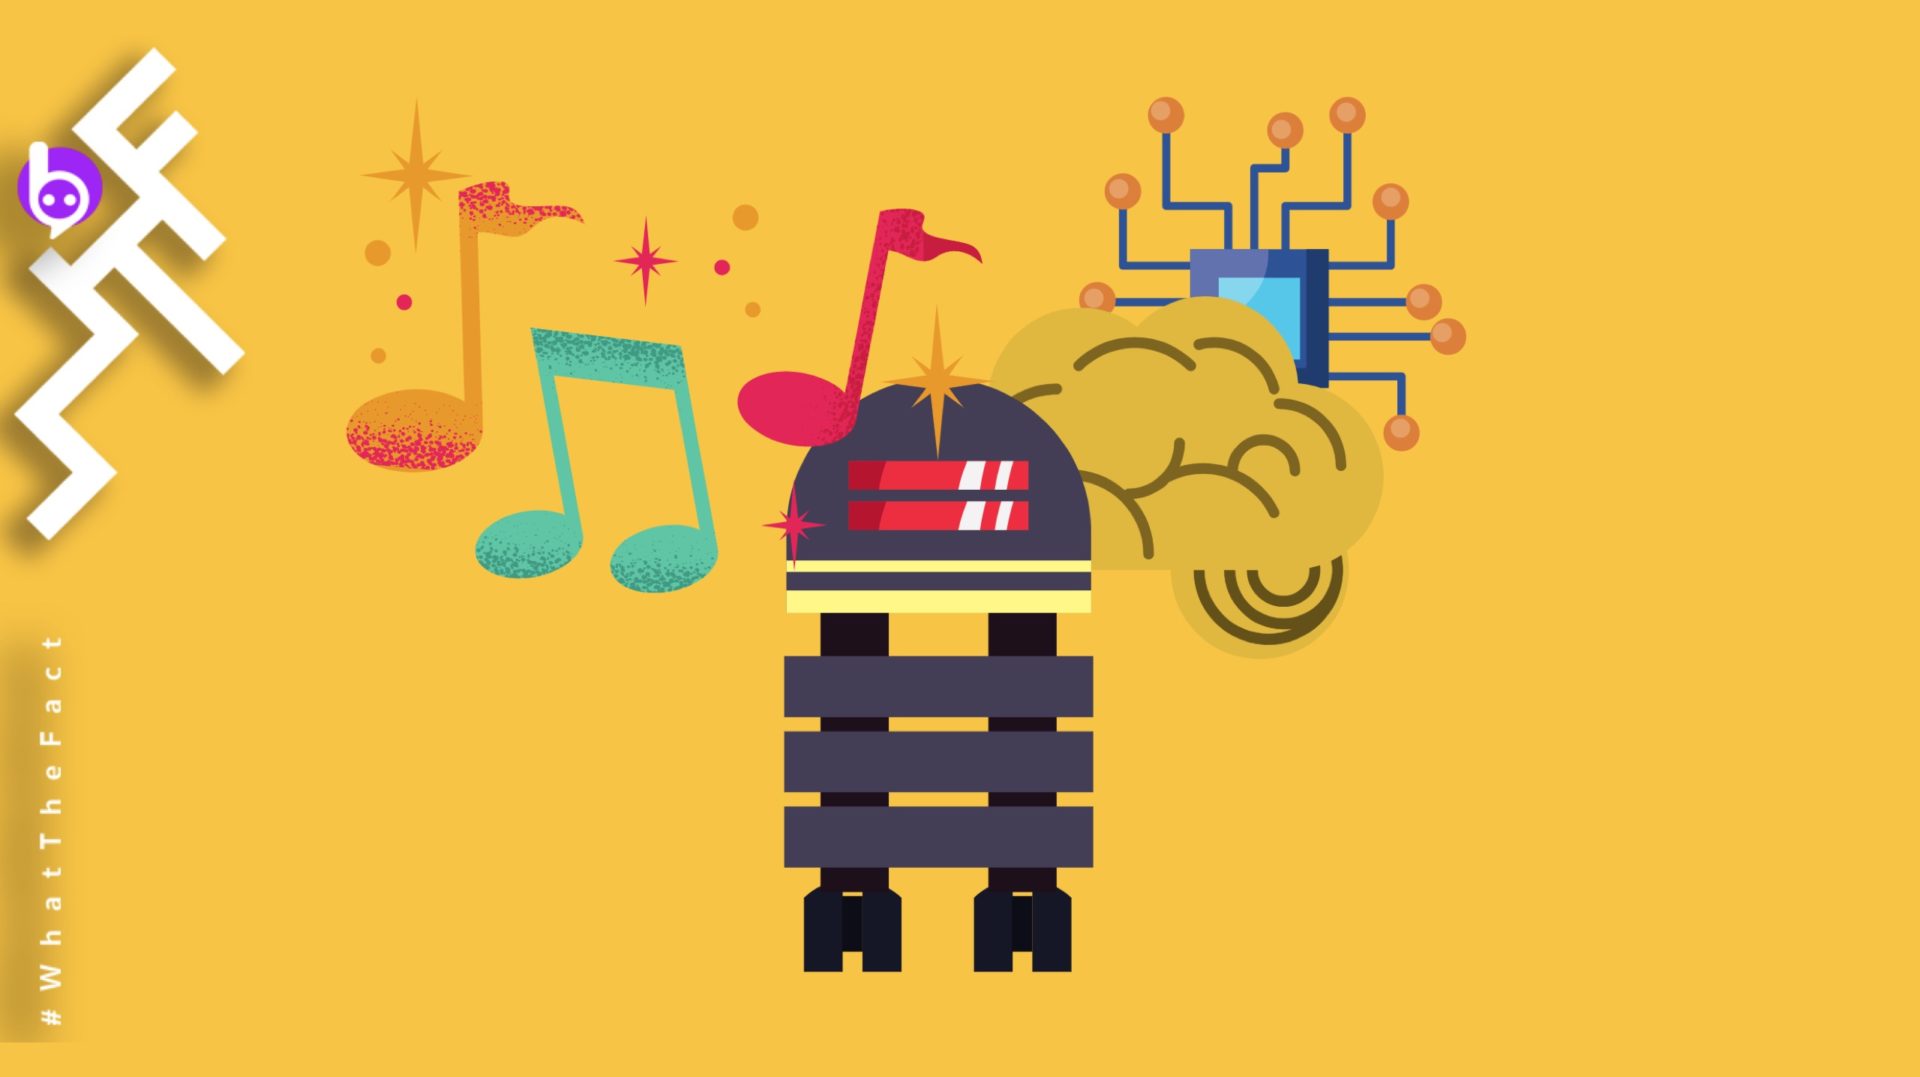 เจาะลึก !! “Jukebox” AI ที่แต่งเพลงได้ เขียนเนื้อเพลงได้ และร้องเพลงได้แบบเอลวิส เพรสลีย์ แฟรงก์ ซินาตรา เอลลา ฟิตซ์เจอรัลด์ หรือว่า คานเย เวสต์ !!